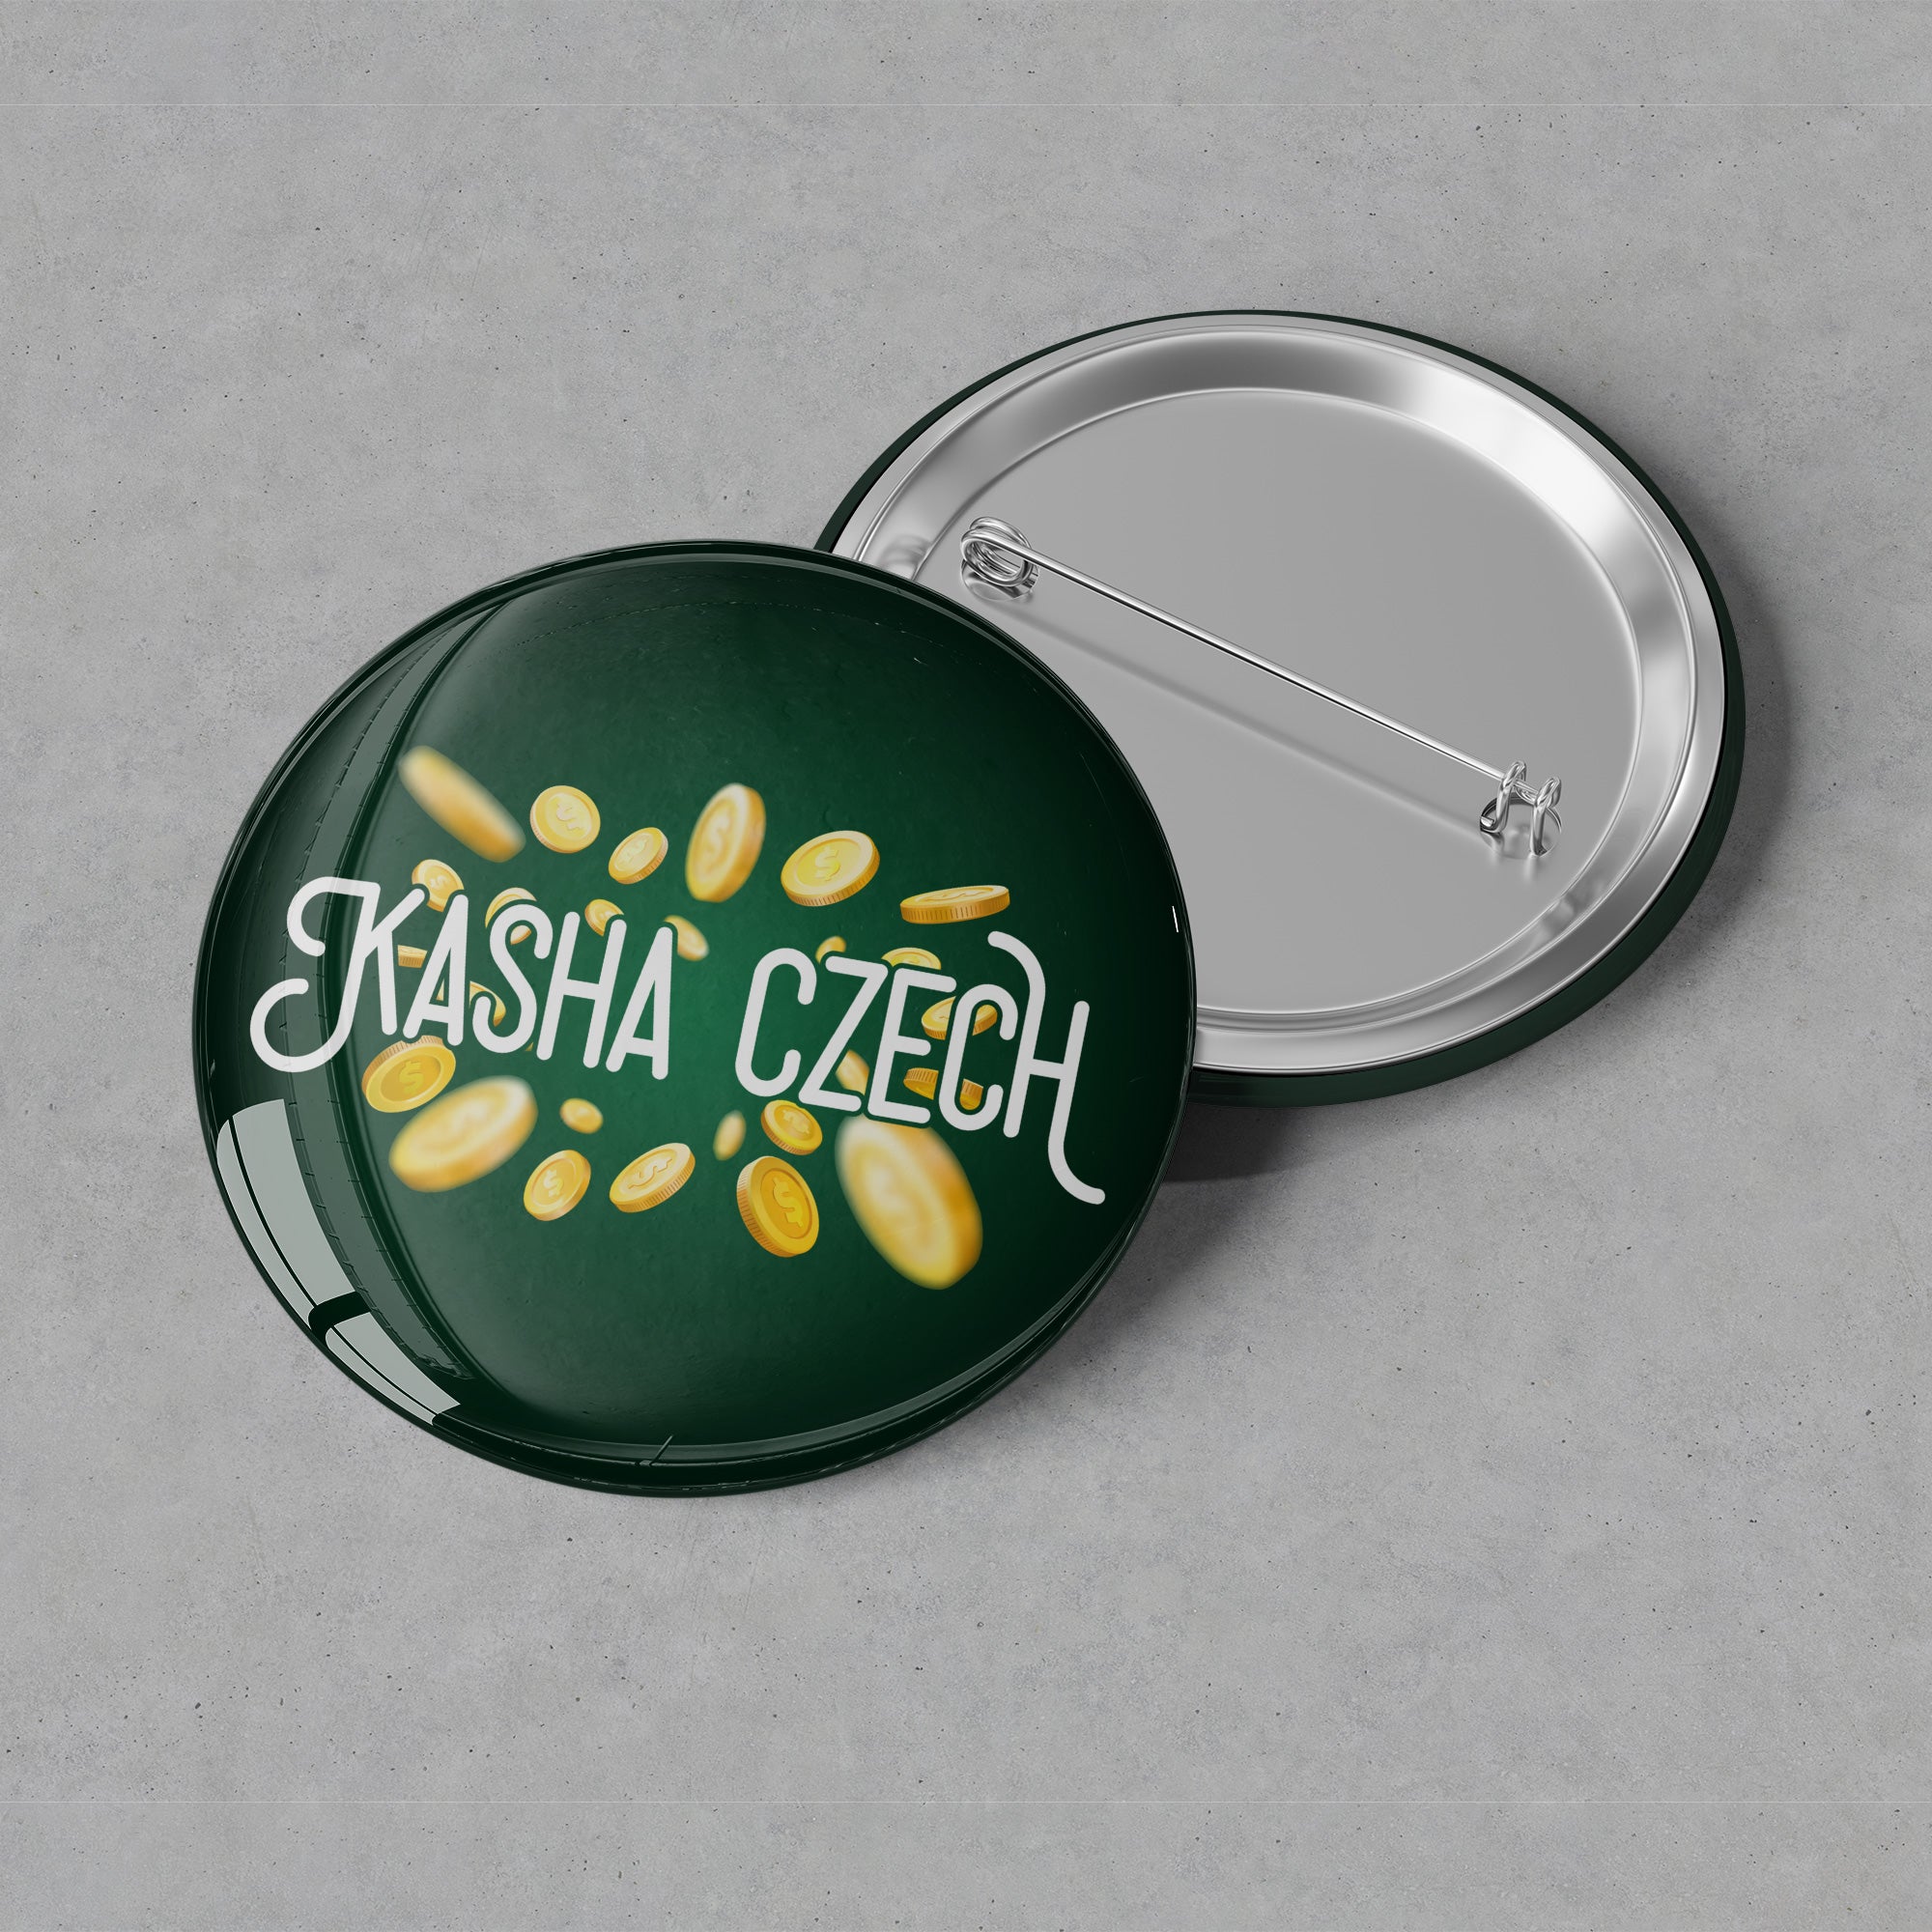 Kasha Czech - Throw Money Button